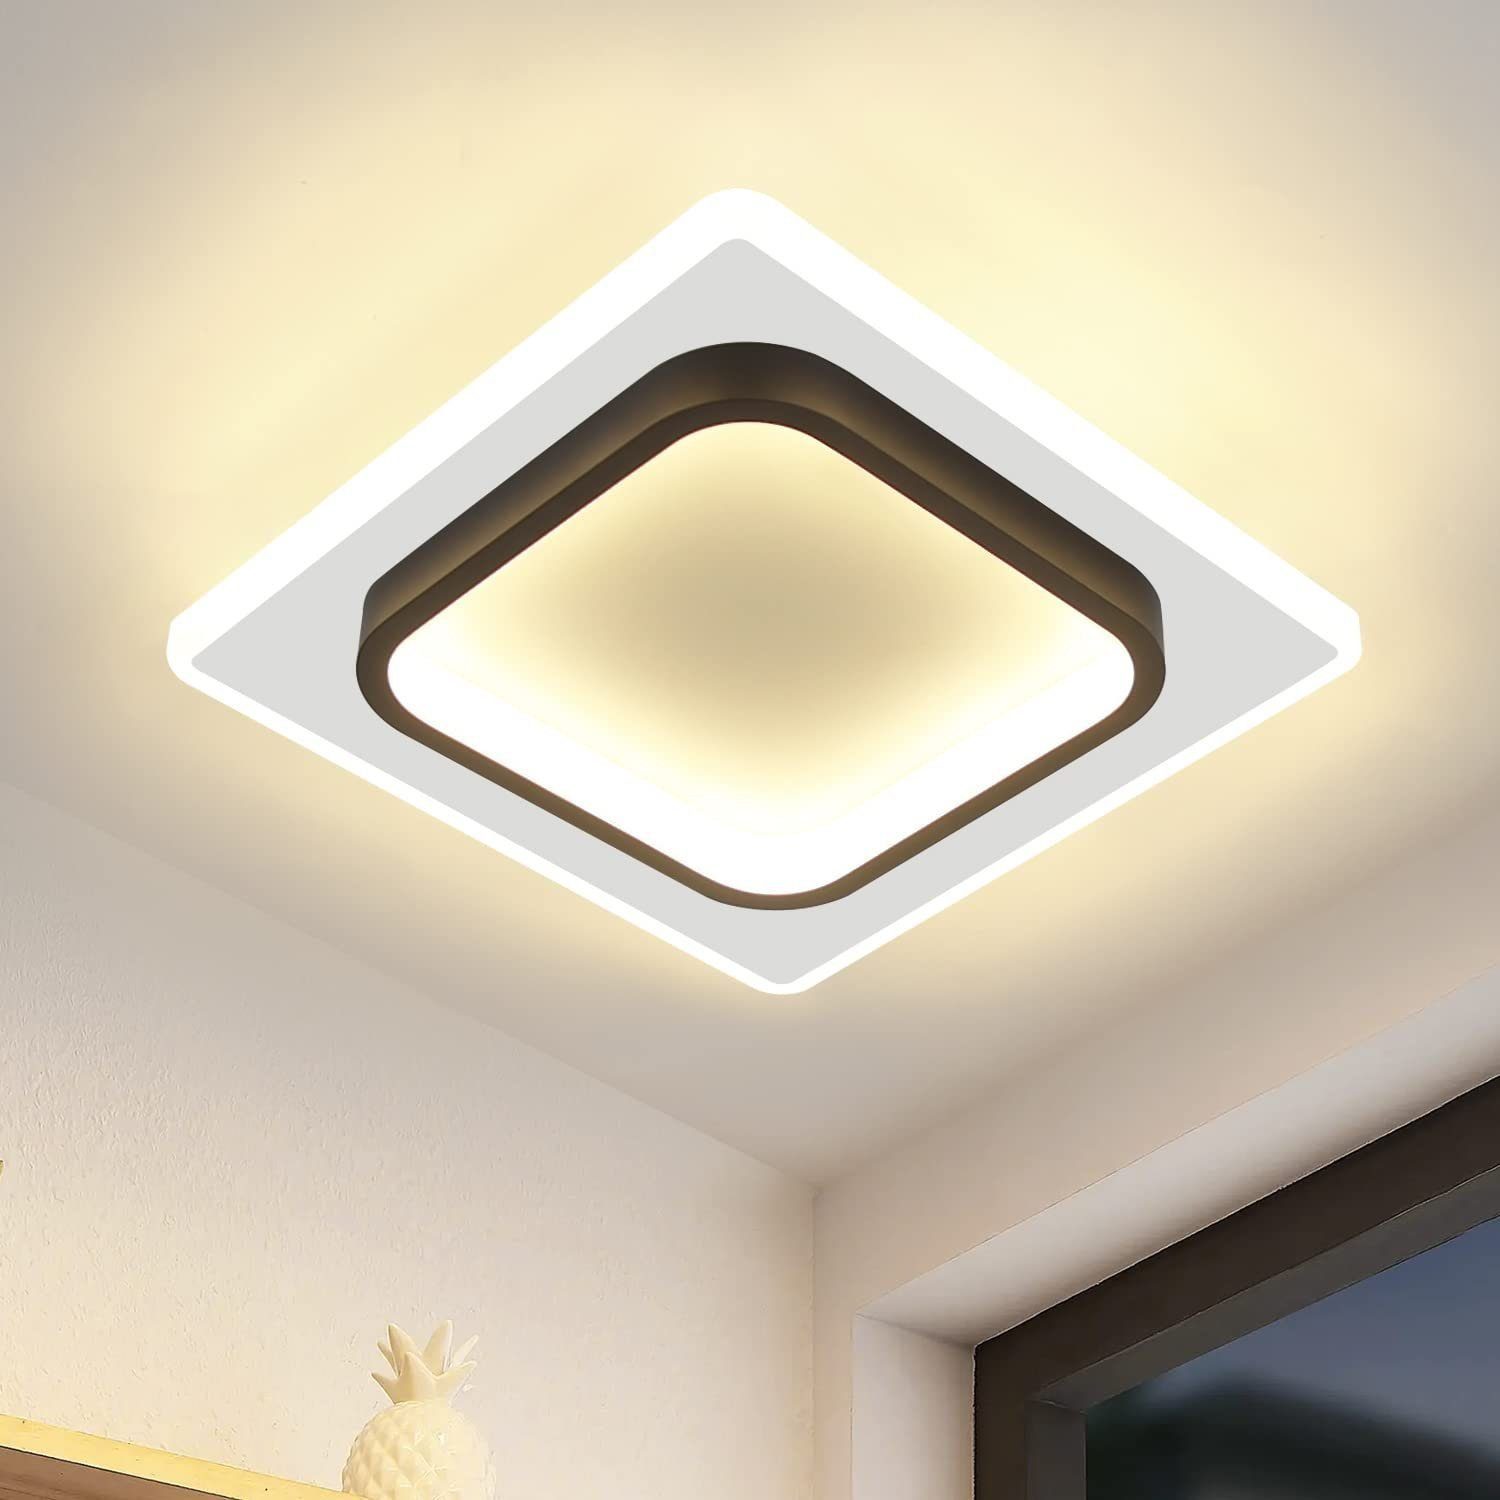 Nettlife LED Deckenleuchte Warmweiß aus Acryl und Metall Modern Schwarz Weiß Design